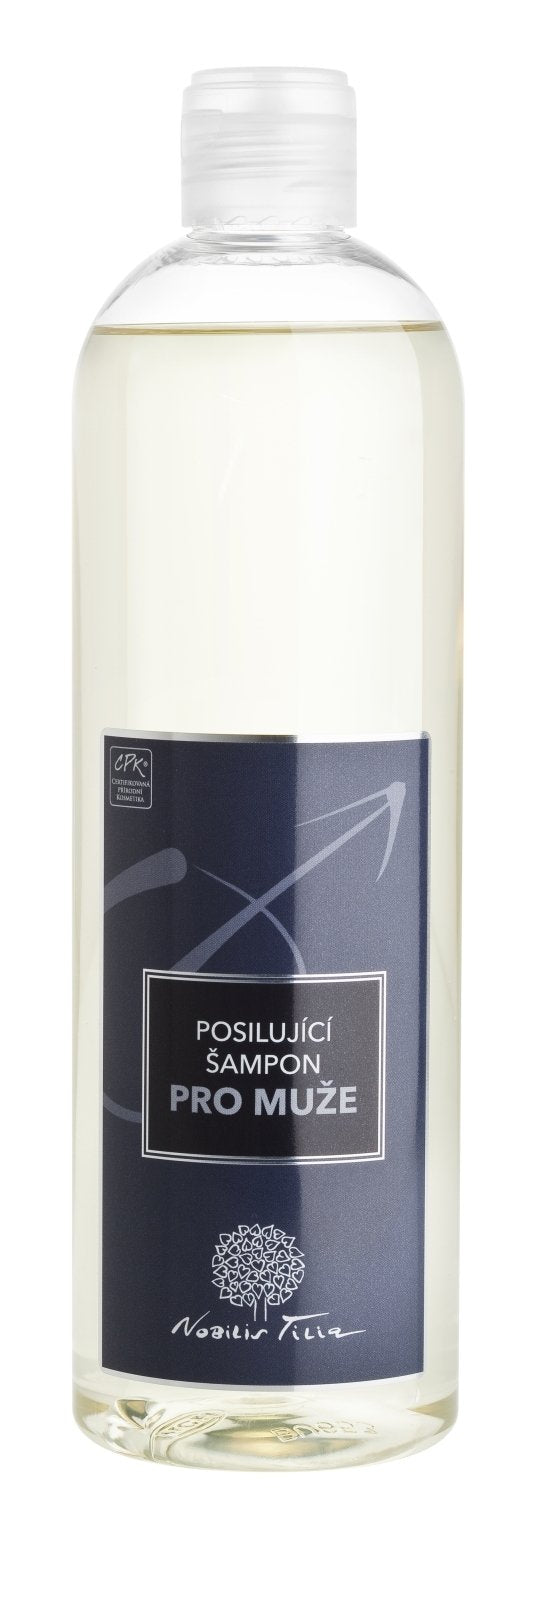 Nobilis Tilia Posilující šampon pro muže 500 ml - podporuje růst vlasů Nobilis Tilia